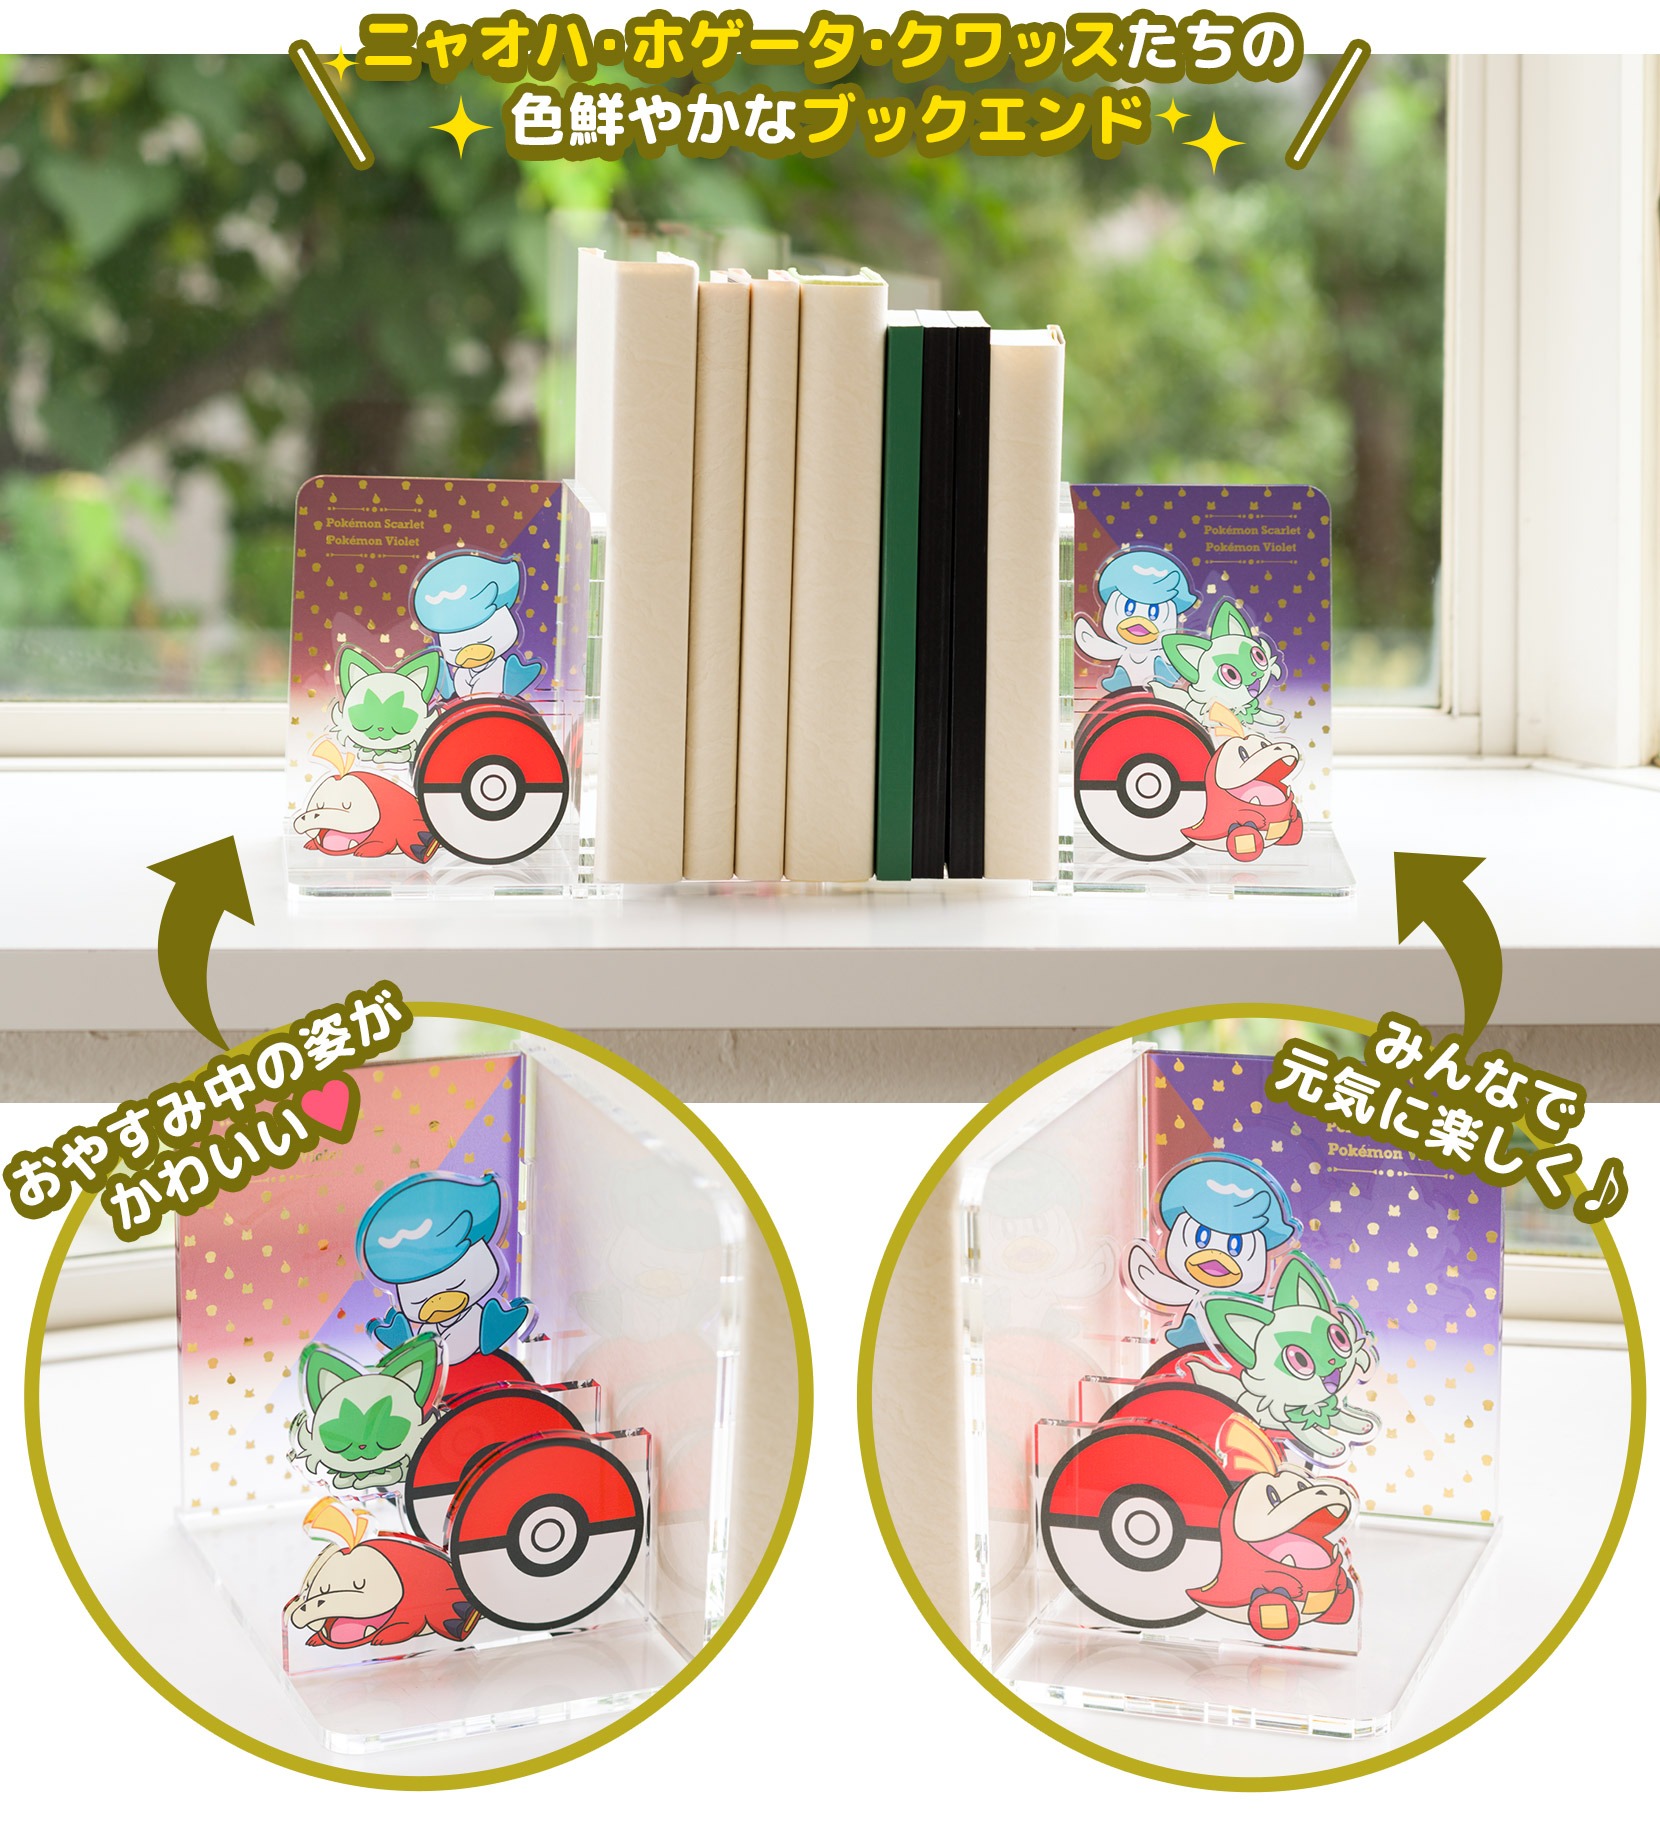 Chi prenoterà Pokémon Scarlatto e Violetto in Giappone potrà vincere dei  gadget esclusivi - Pokémon Millennium